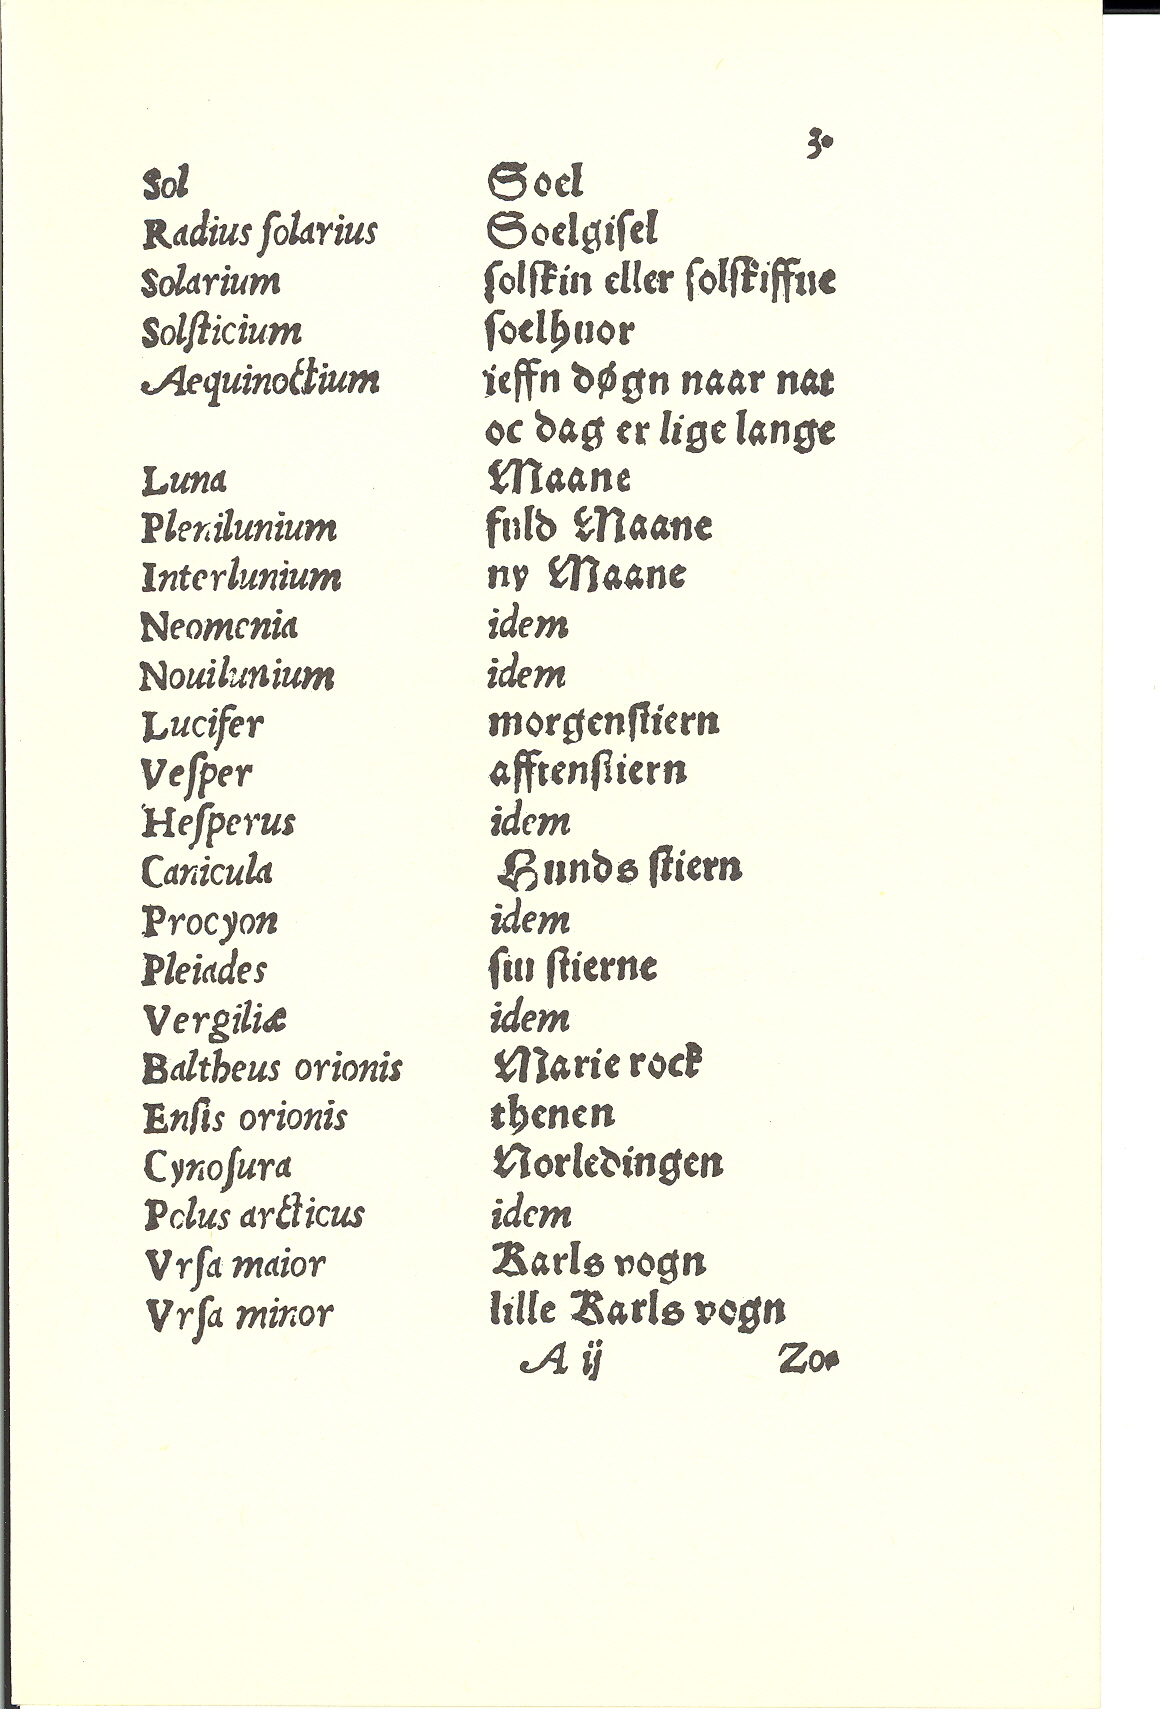 Tursen 1561, Side: 3